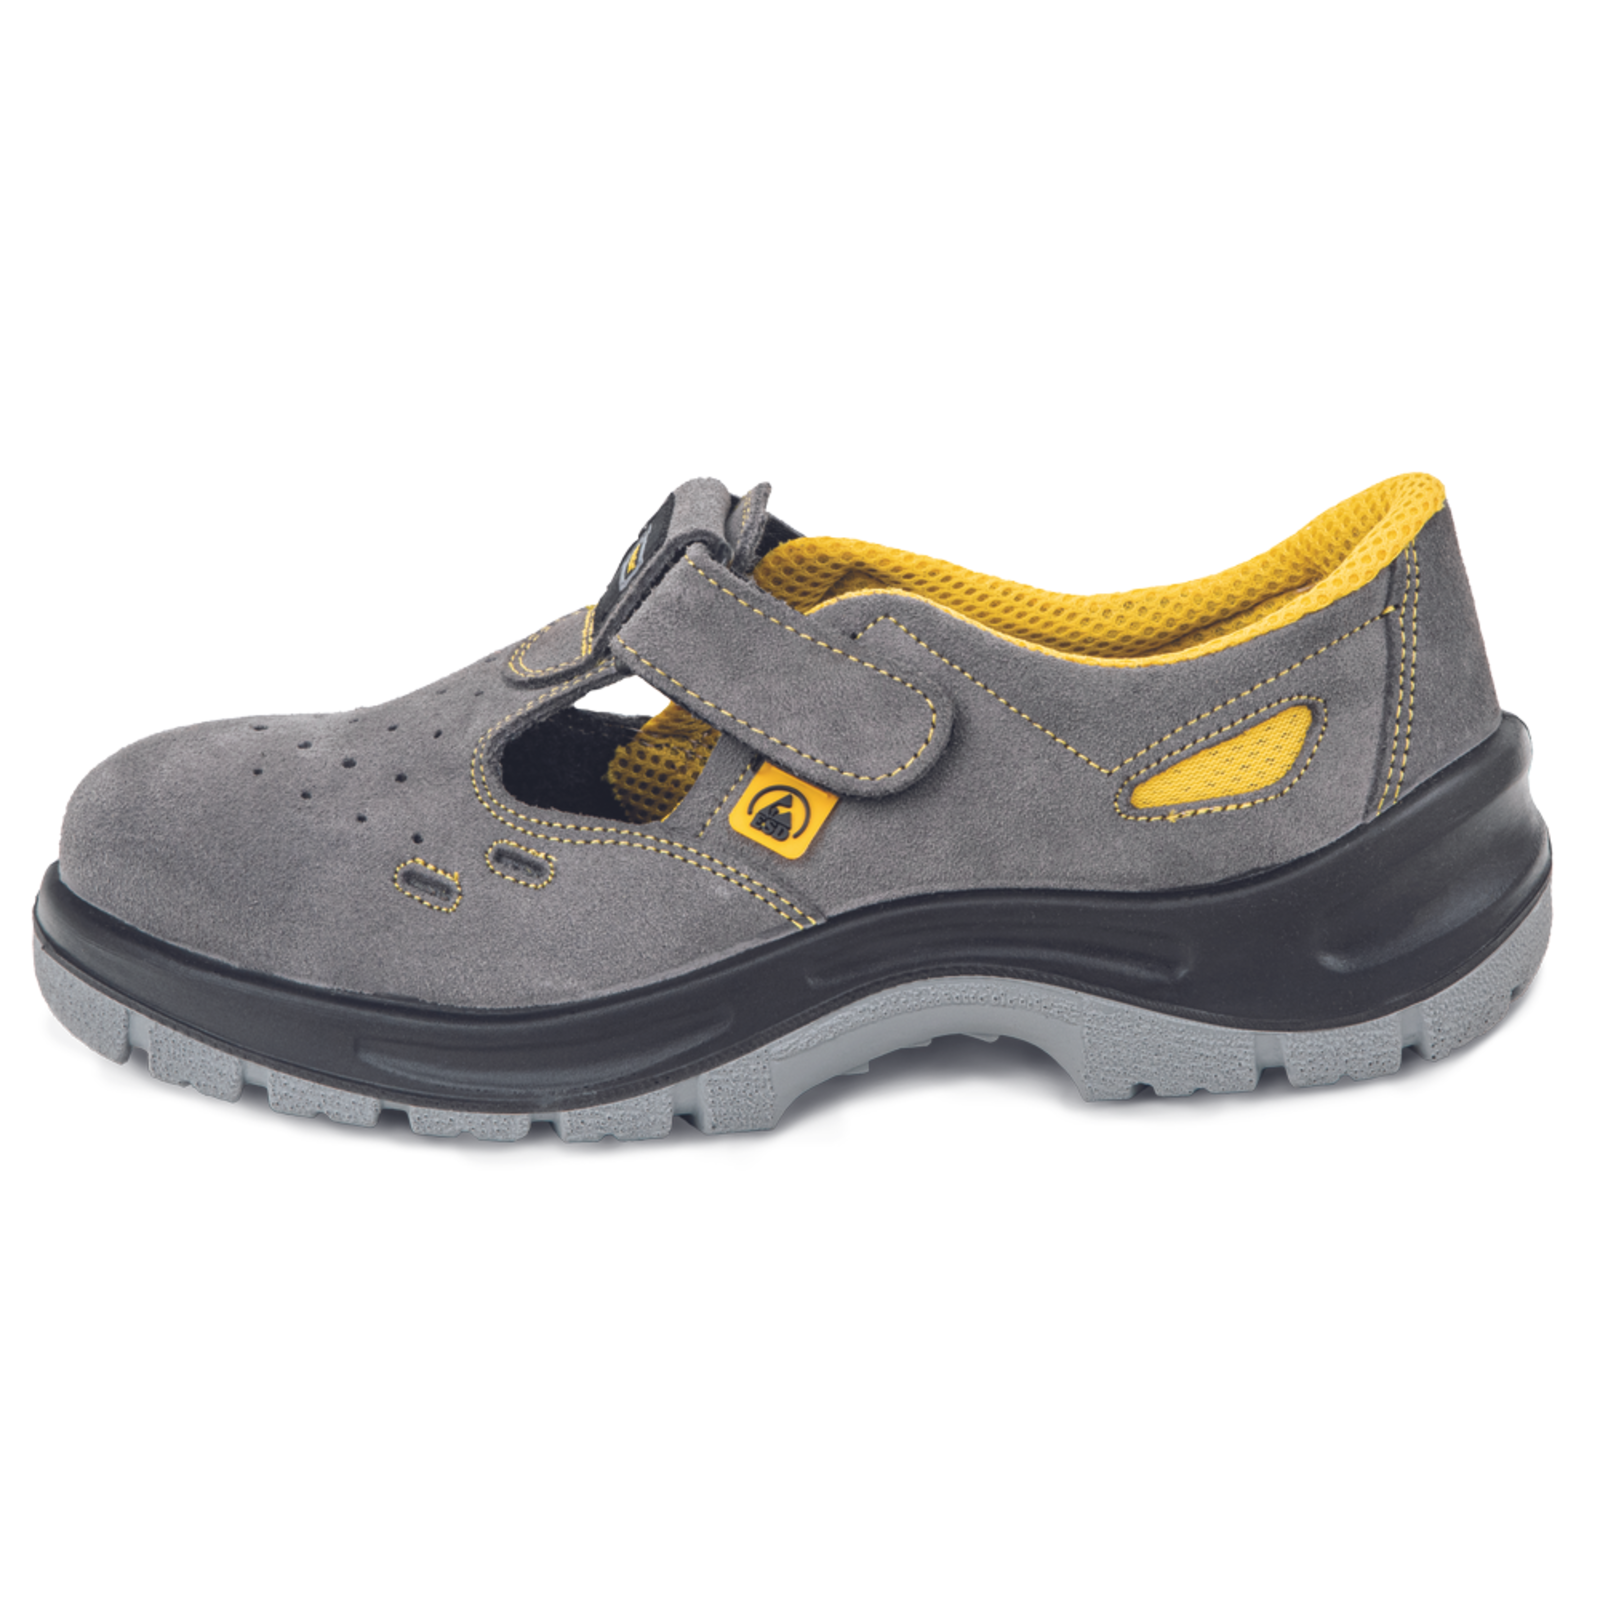 Pracovné bezpečnostné sandále Panda Selma MF ESD S1P SRC - veľkosť: 42, farba: sivá/žltá